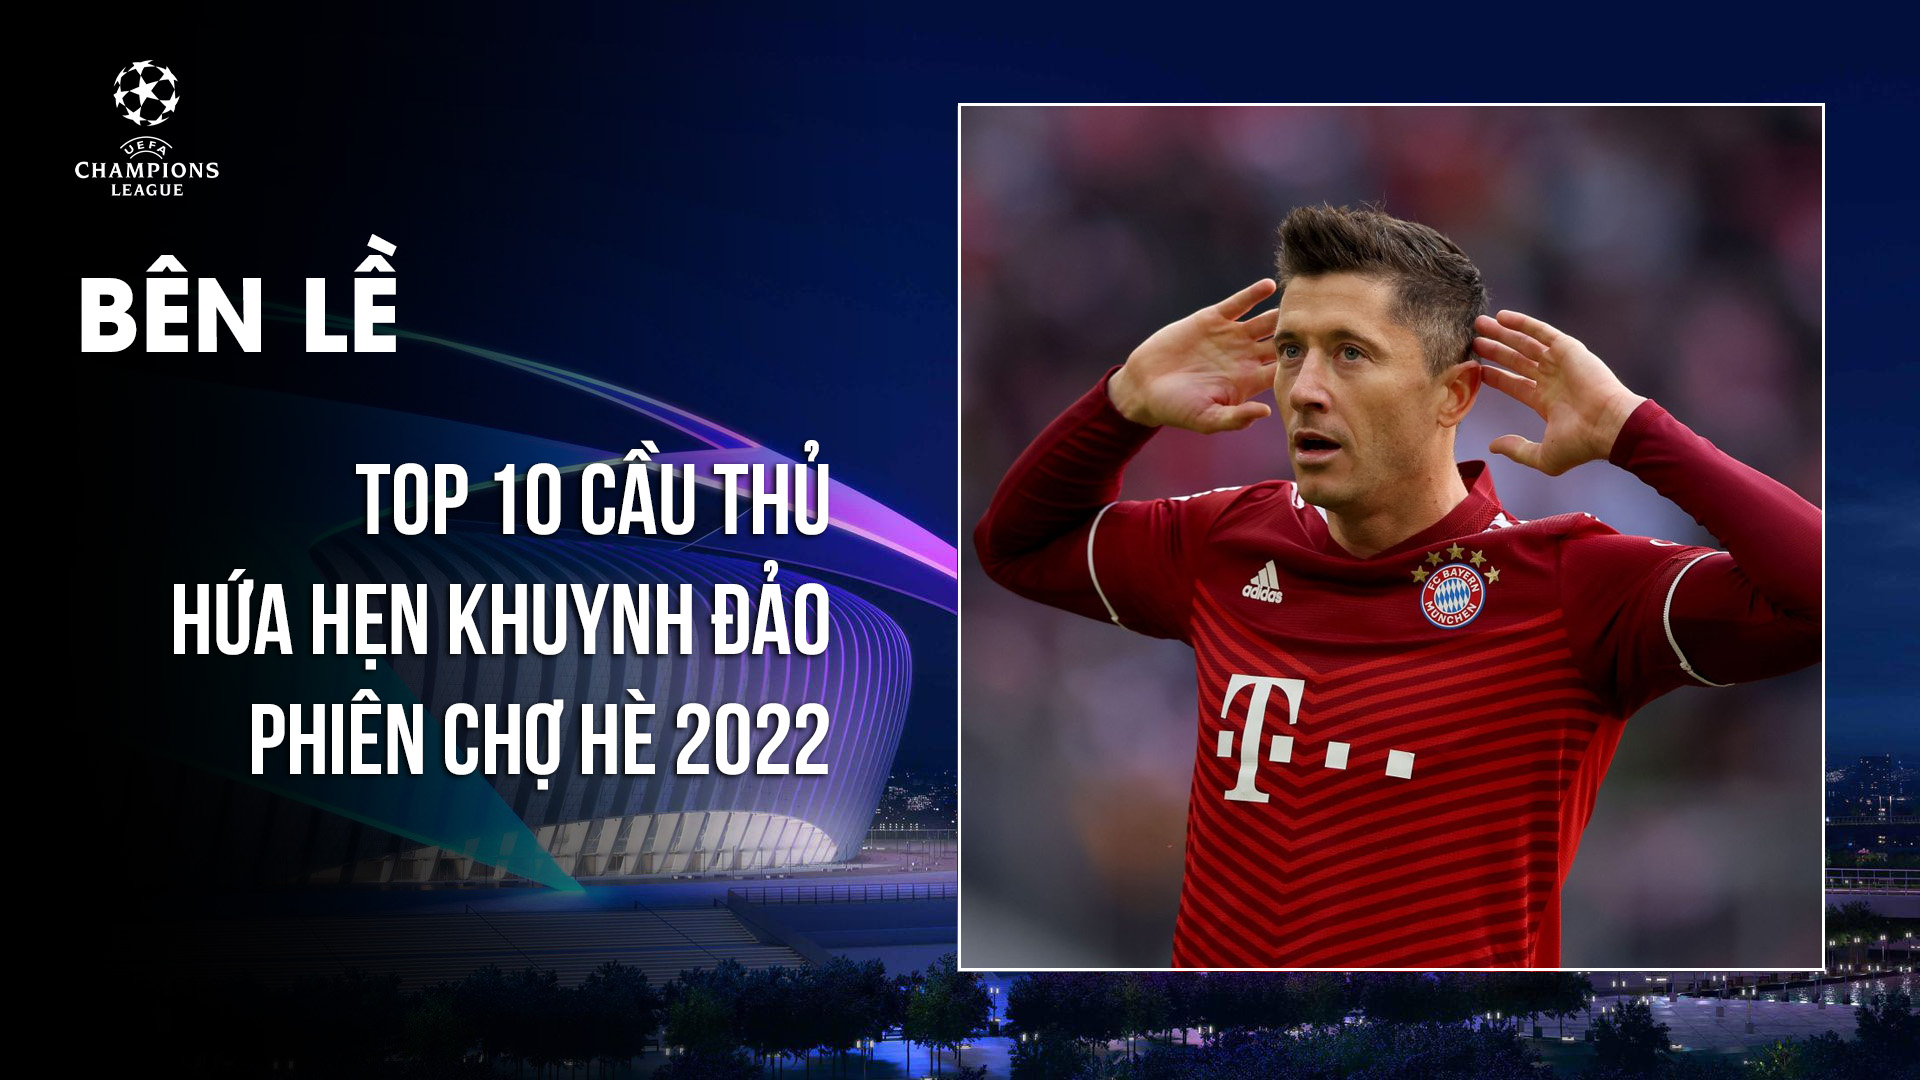 TOP 10 cầu thủ hứa hẹn khuynh đảo phiên chợ hè 2022 - UEFA Champions League